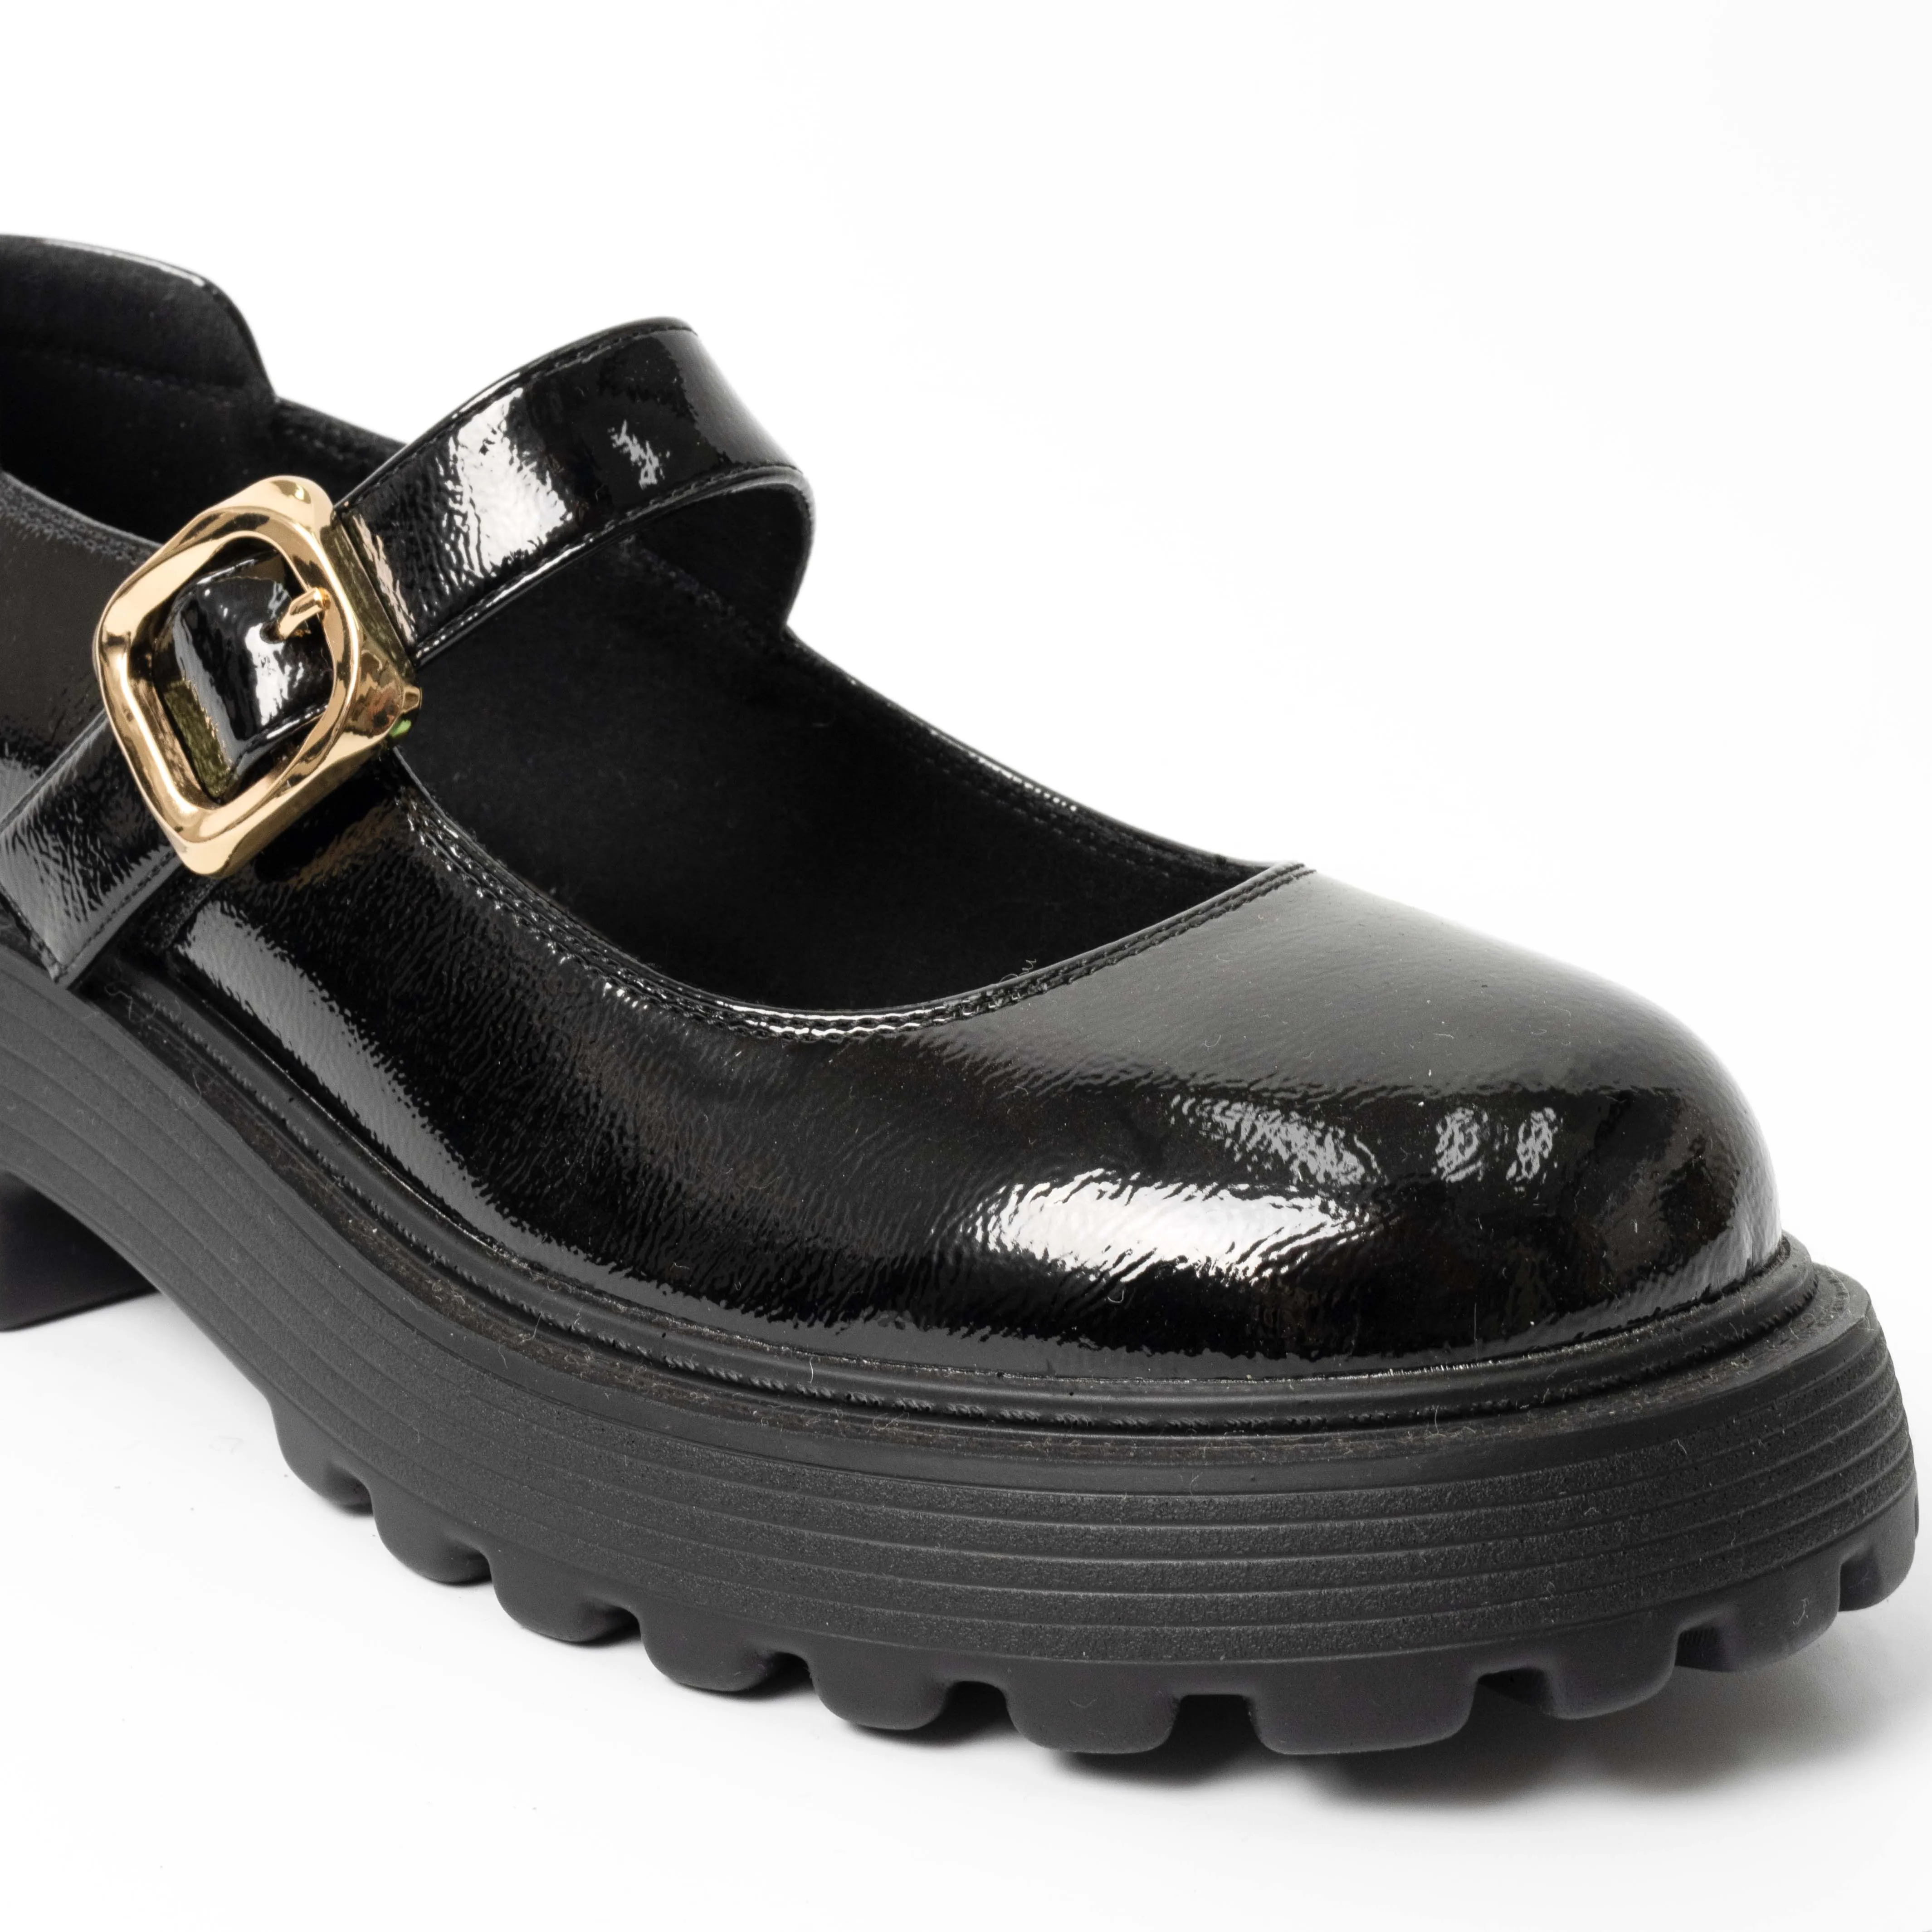 Yaz bahar ve sonbahar için moda tasarımı ve kapalı ayak ile 2024 YZY kadın Patent deri elbise ayakkabı